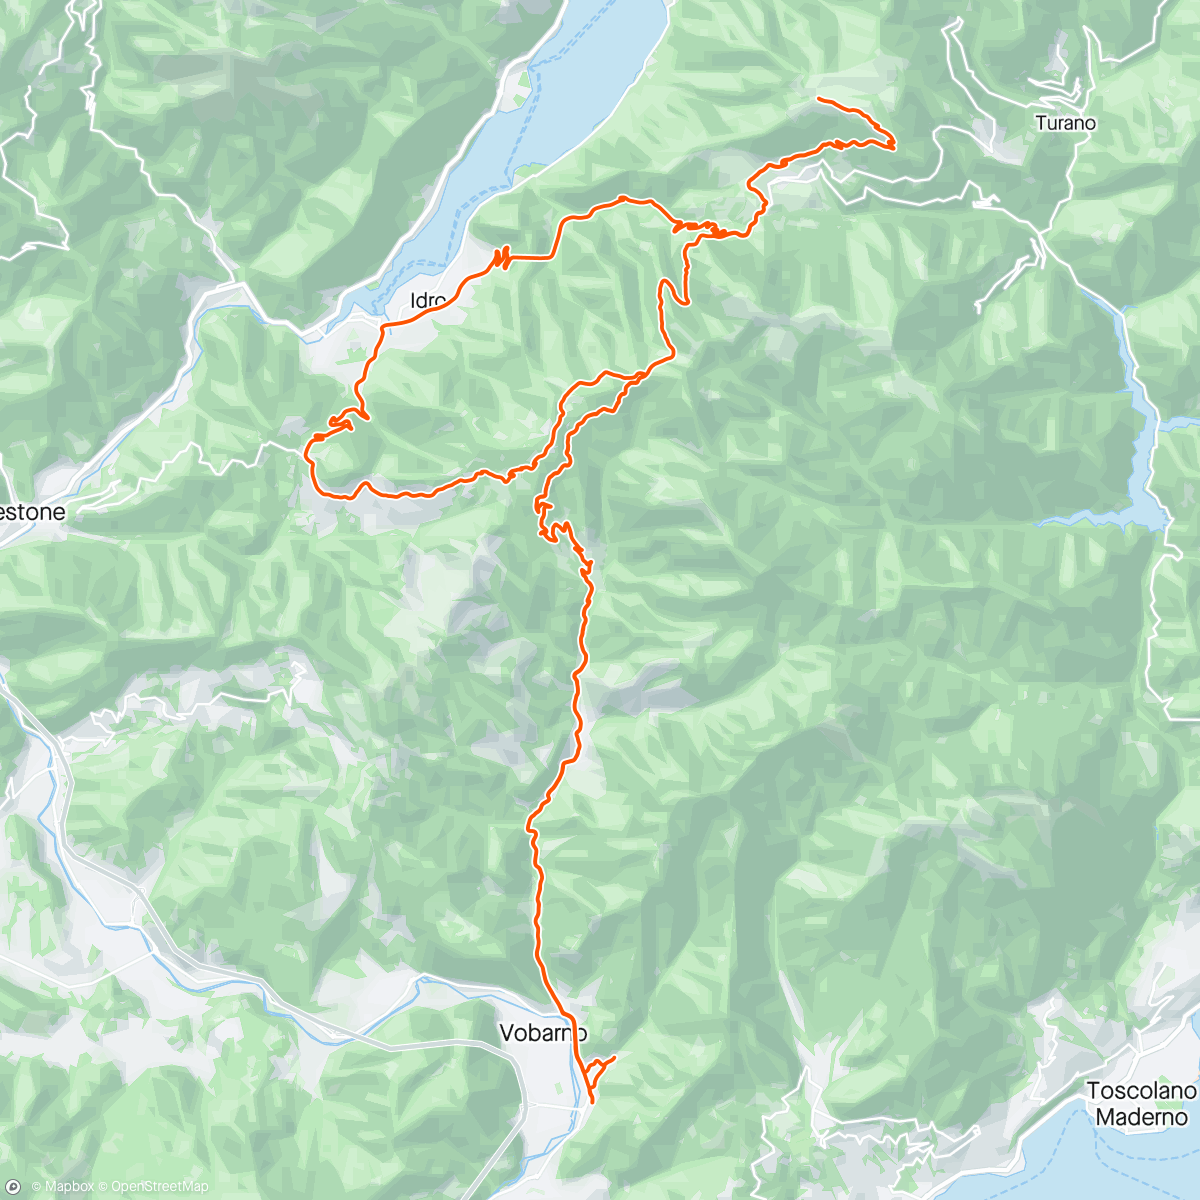 Map of the activity, Giro in Bdc Cavallino della Fobbia - Capovalle- Monte Stino - Idro - Treviso Bresciano e ancora Cavallino della Fobbia.